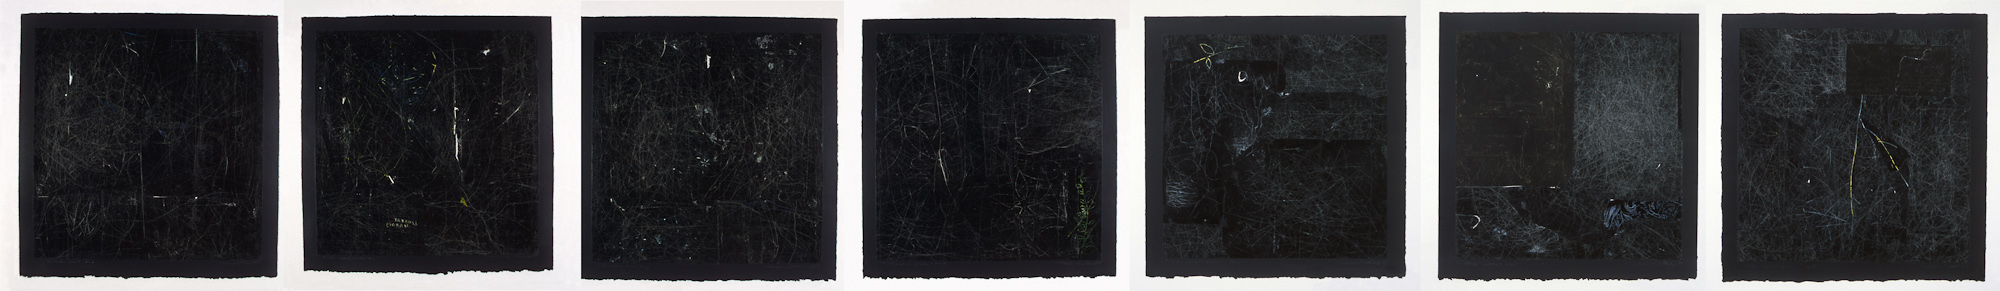 Les carrés noirs, no 1 à 7, 1998 - 1999. Gouache et crayon sur papier carbone, 46 x 322 cm.